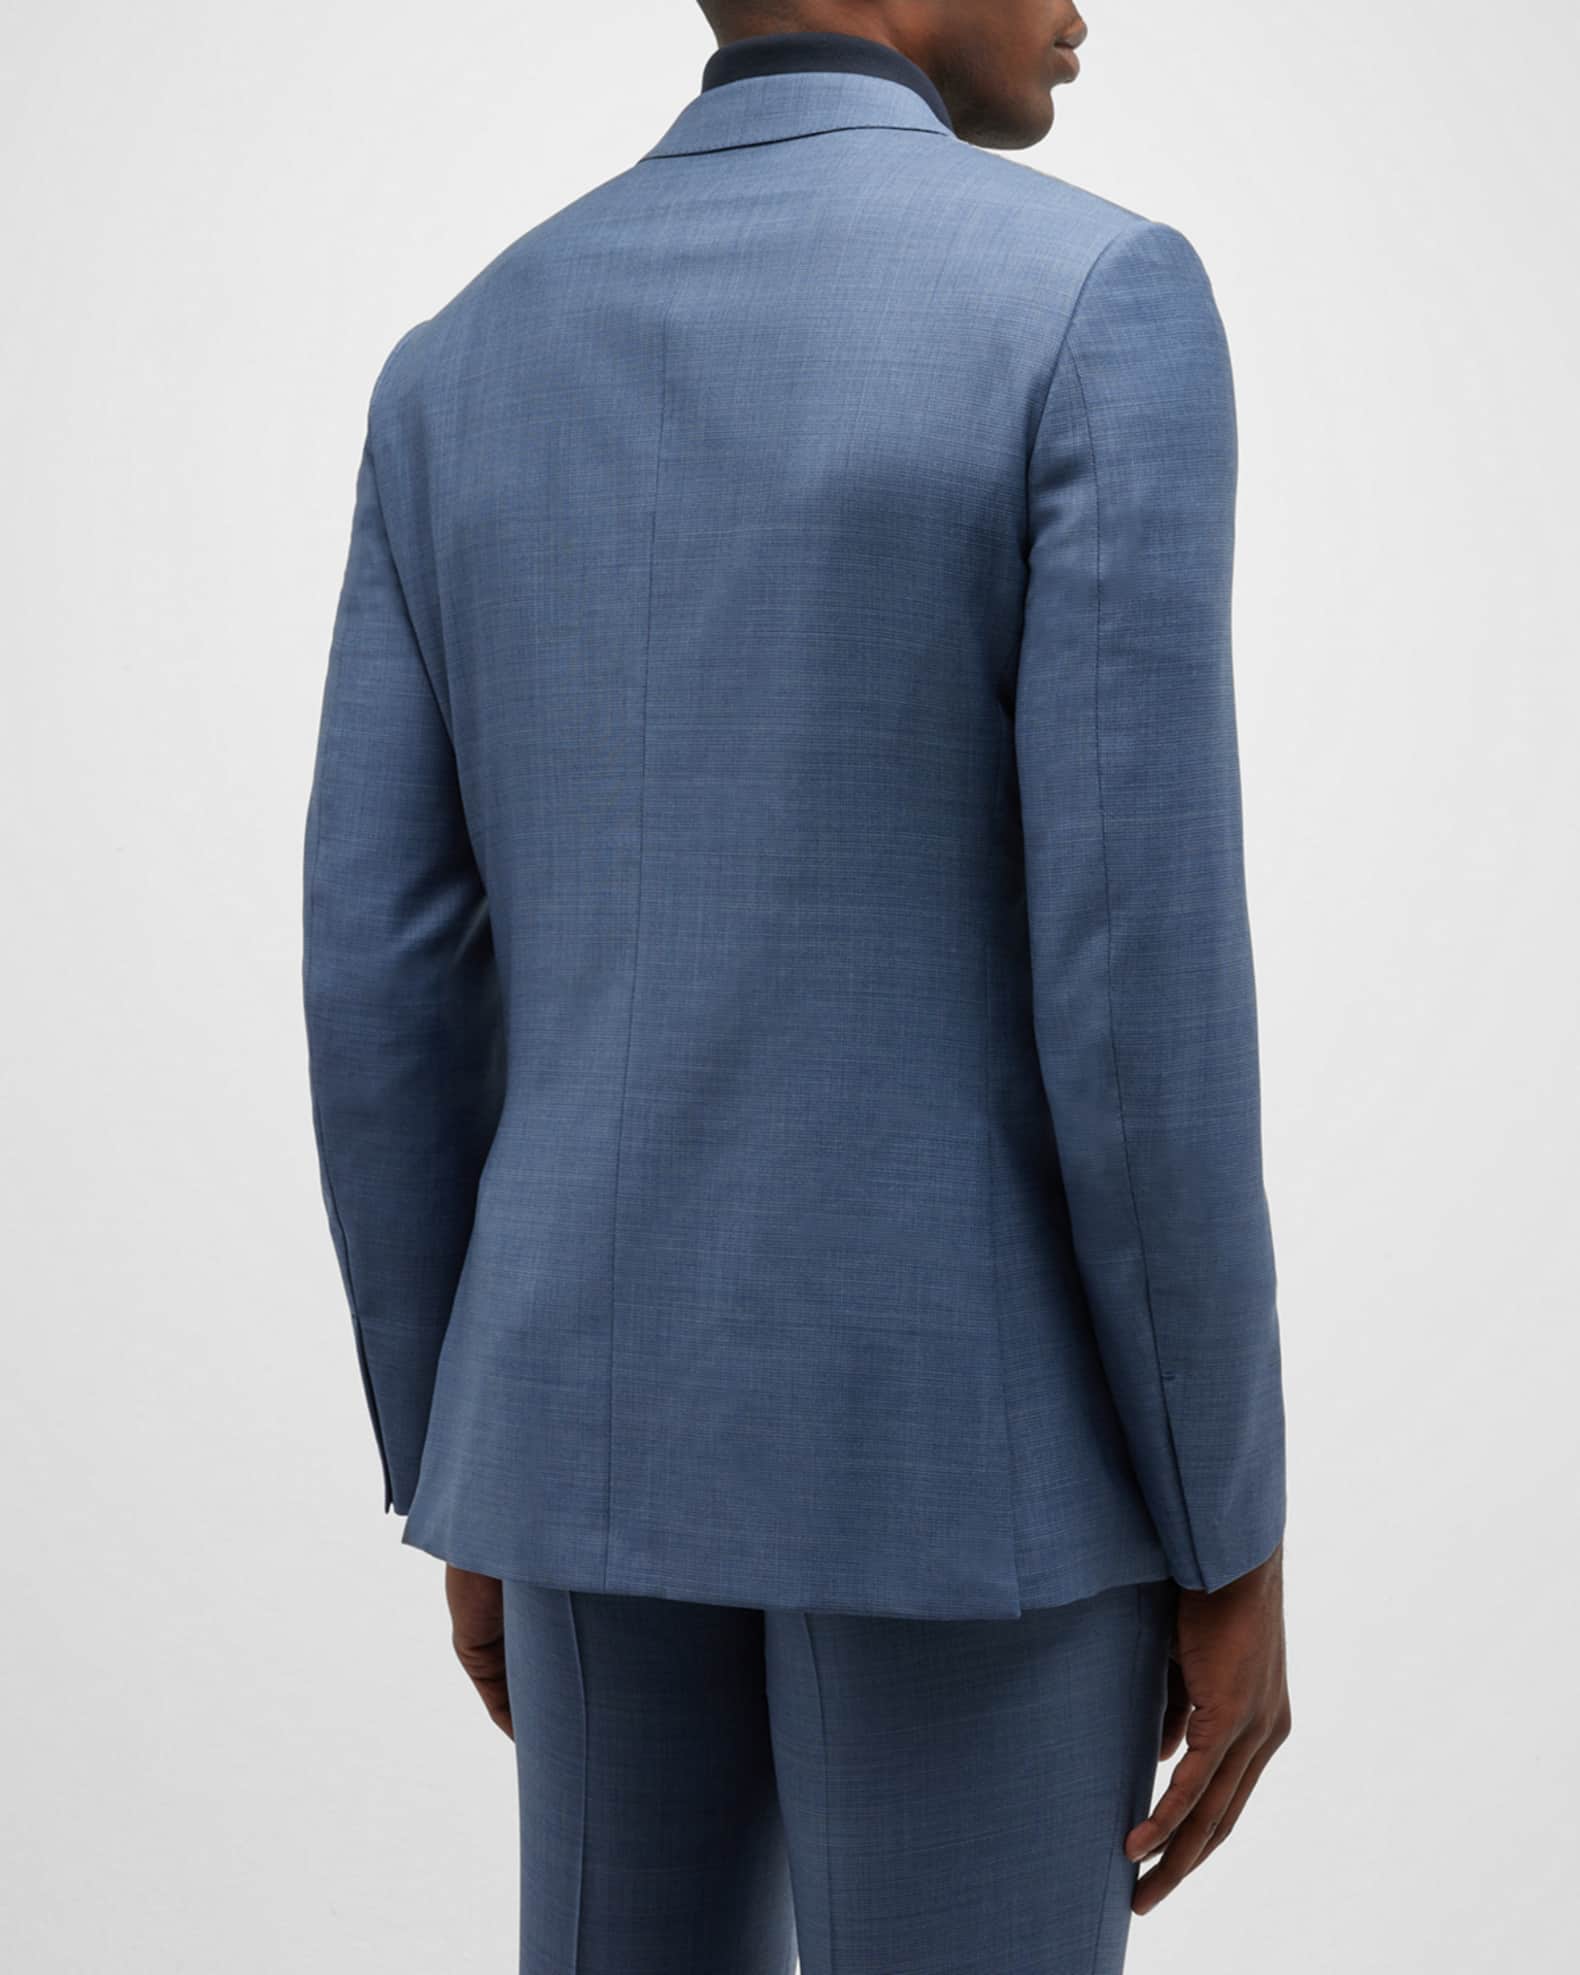 ZEGNA Men's Two-Piece Wool Suit | Neiman Marcus